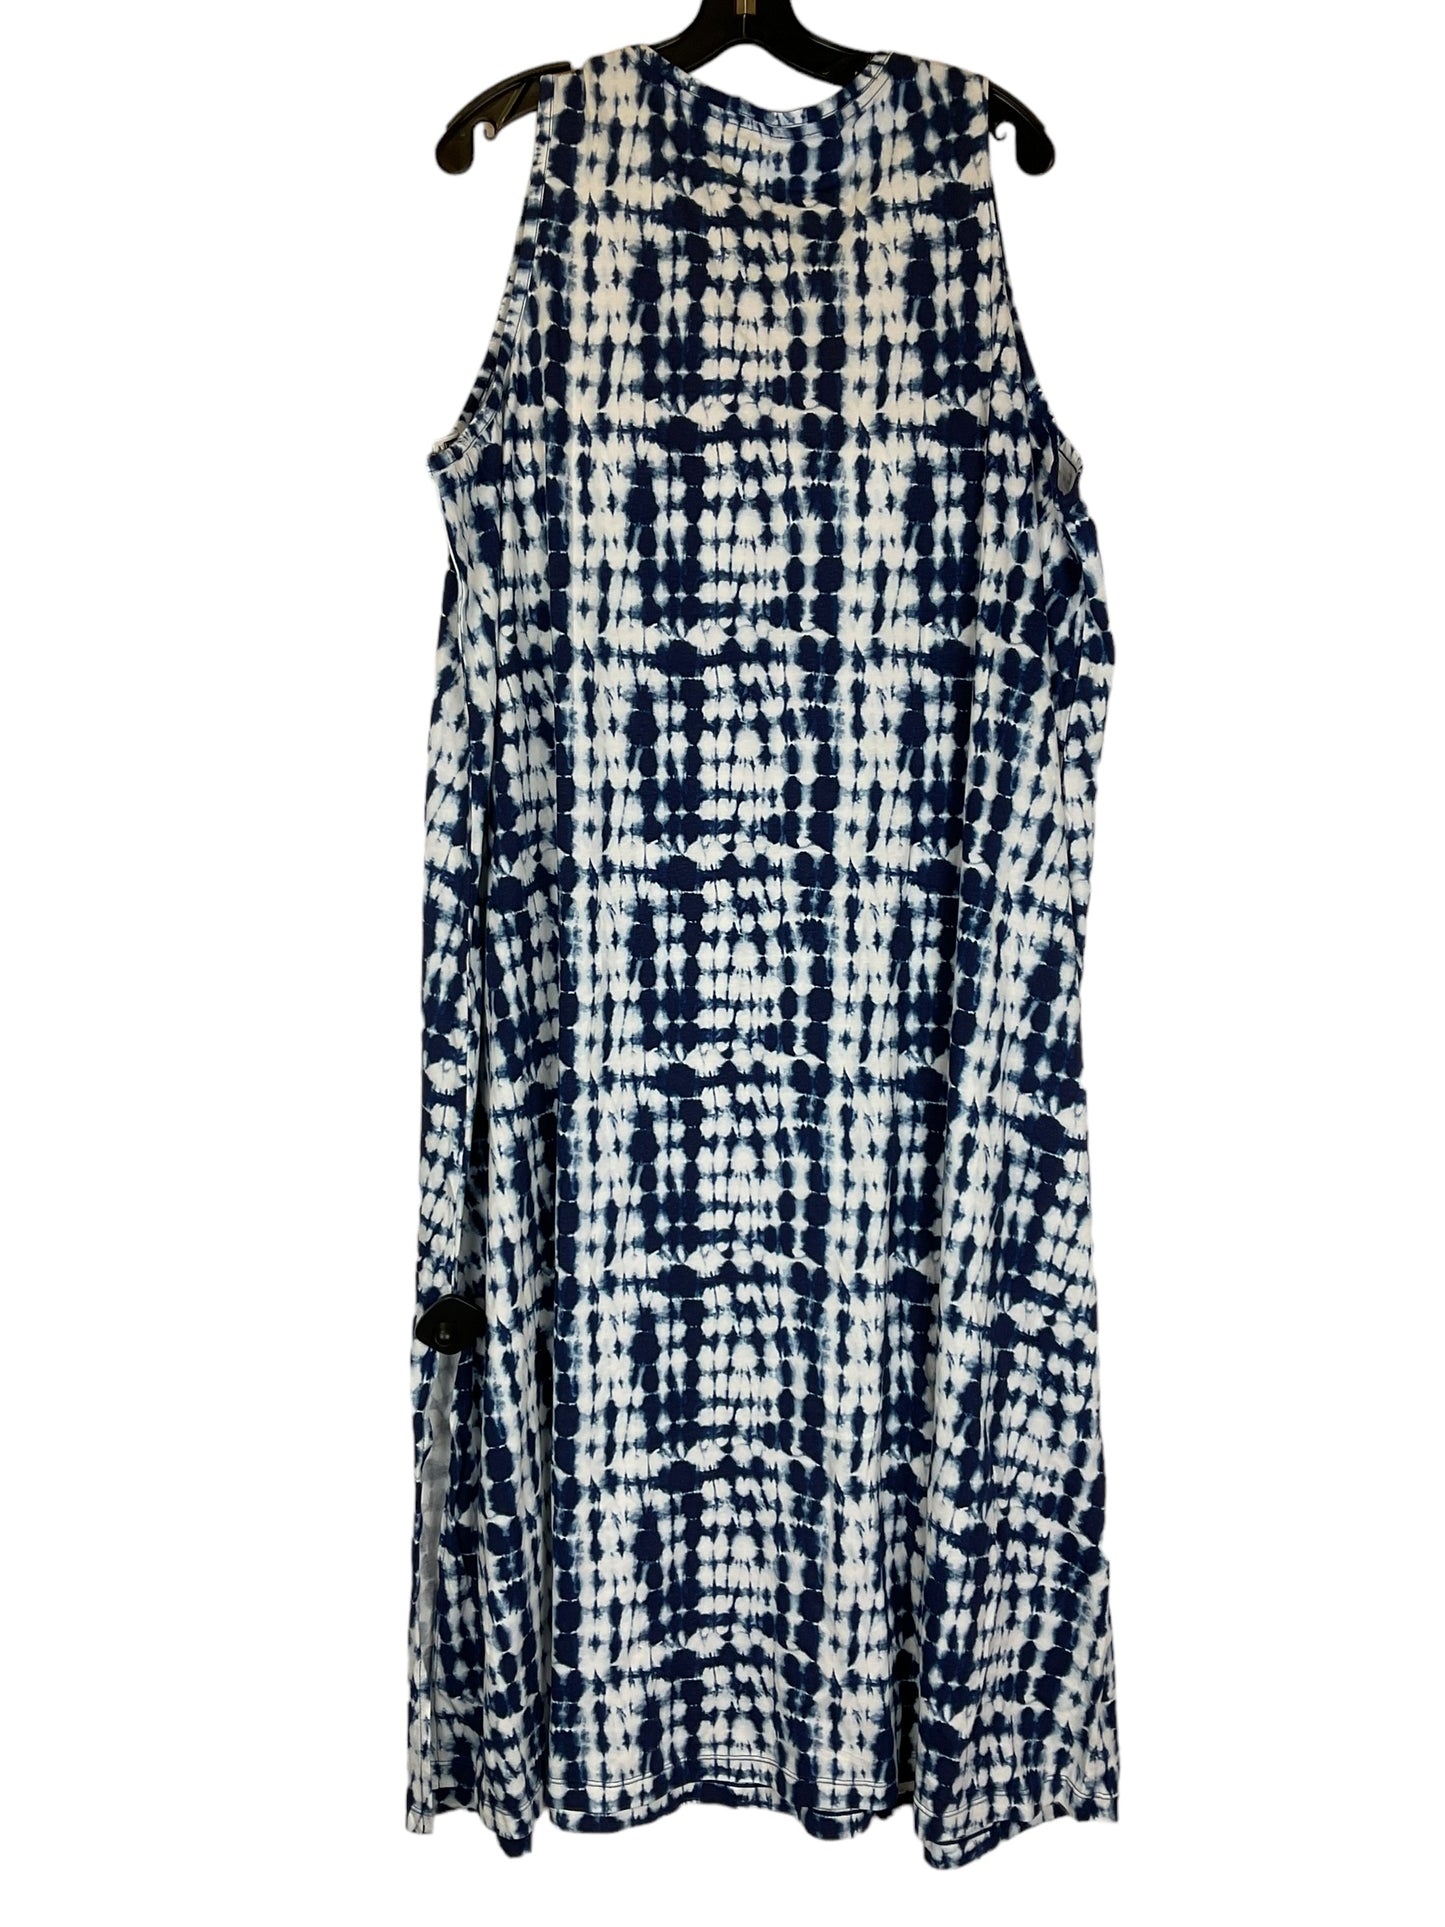 Dress Casual Maxi By Koolaburra By Ugg  Size: 2x